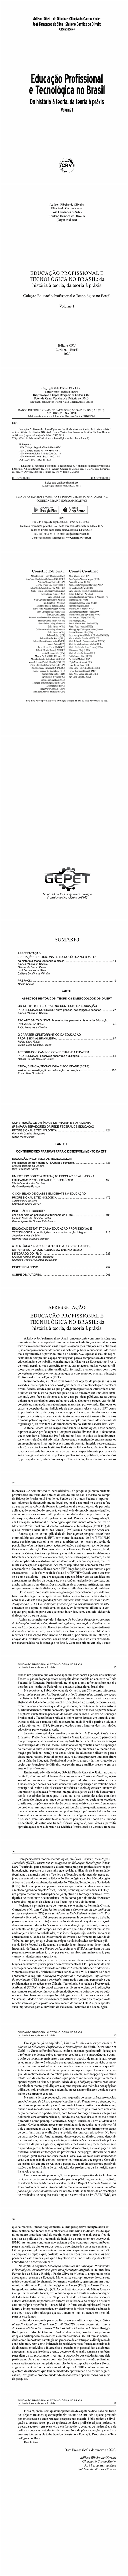 EDUCAÇÃO PROFISSIONAL E TECNOLÓGICA NO BRASIL: <br>da história à teoria, da teoria à práxis <br><br>Coleção Educação Profissional e Tecnológica no Brasil<br> Volume 1